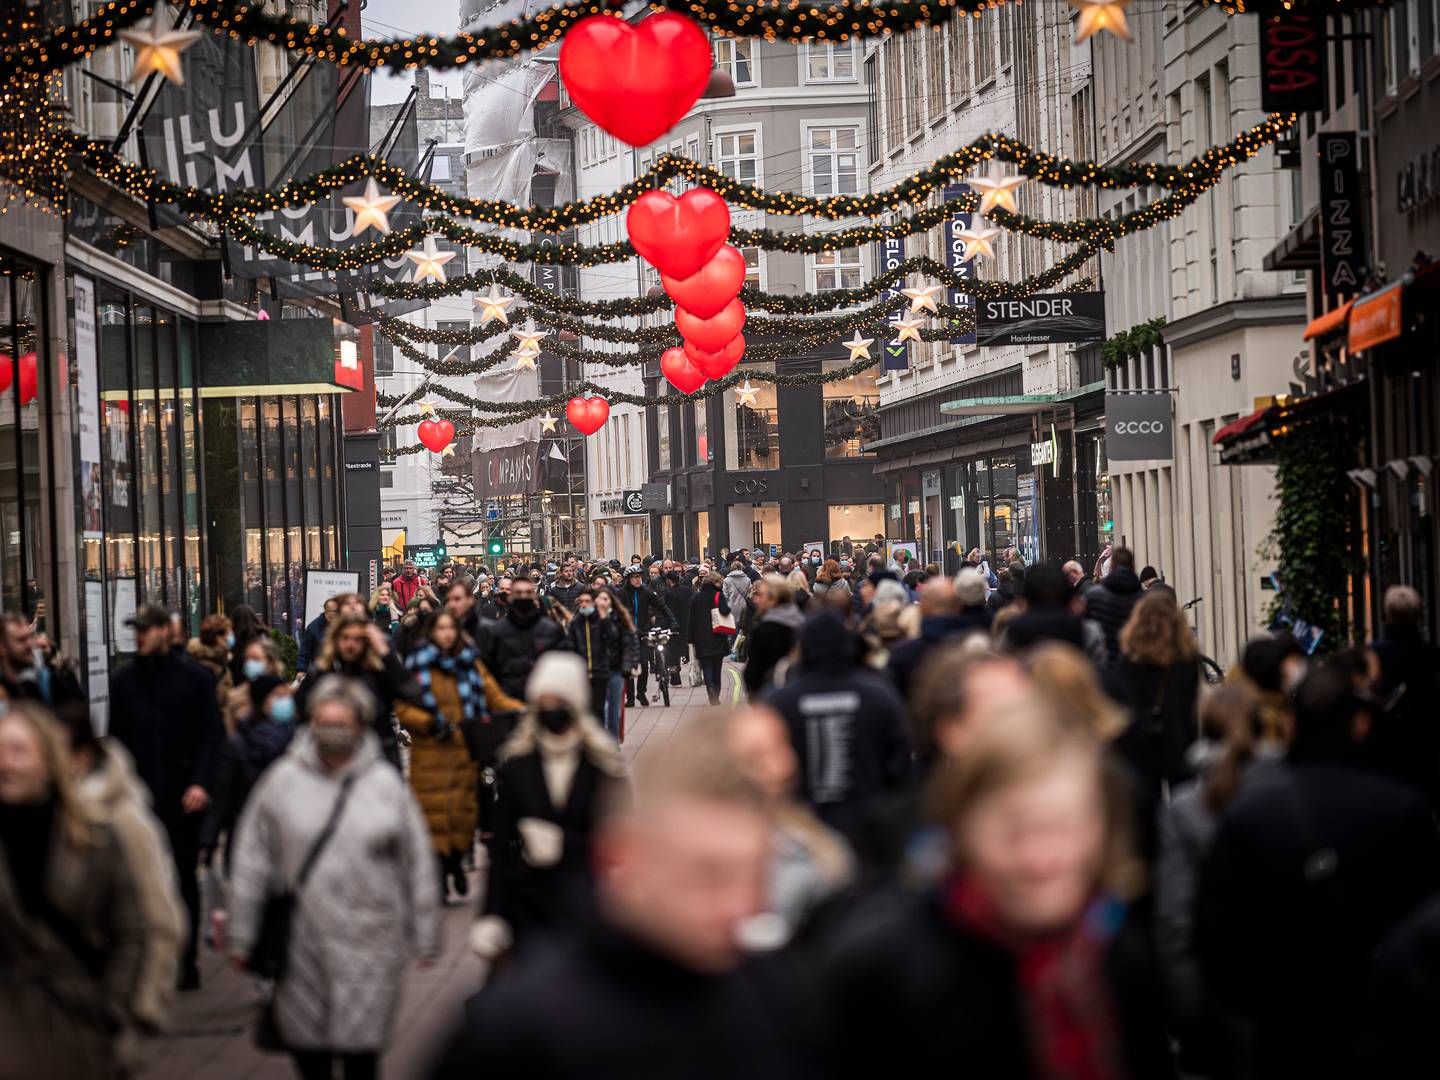 Flere forbrugere søger mod de billigere alternativer i Norge, når der skal købes ind til julen, lyder det fra rådgivnings- og revisionshuset BDO. | Foto: Jonas Olufson